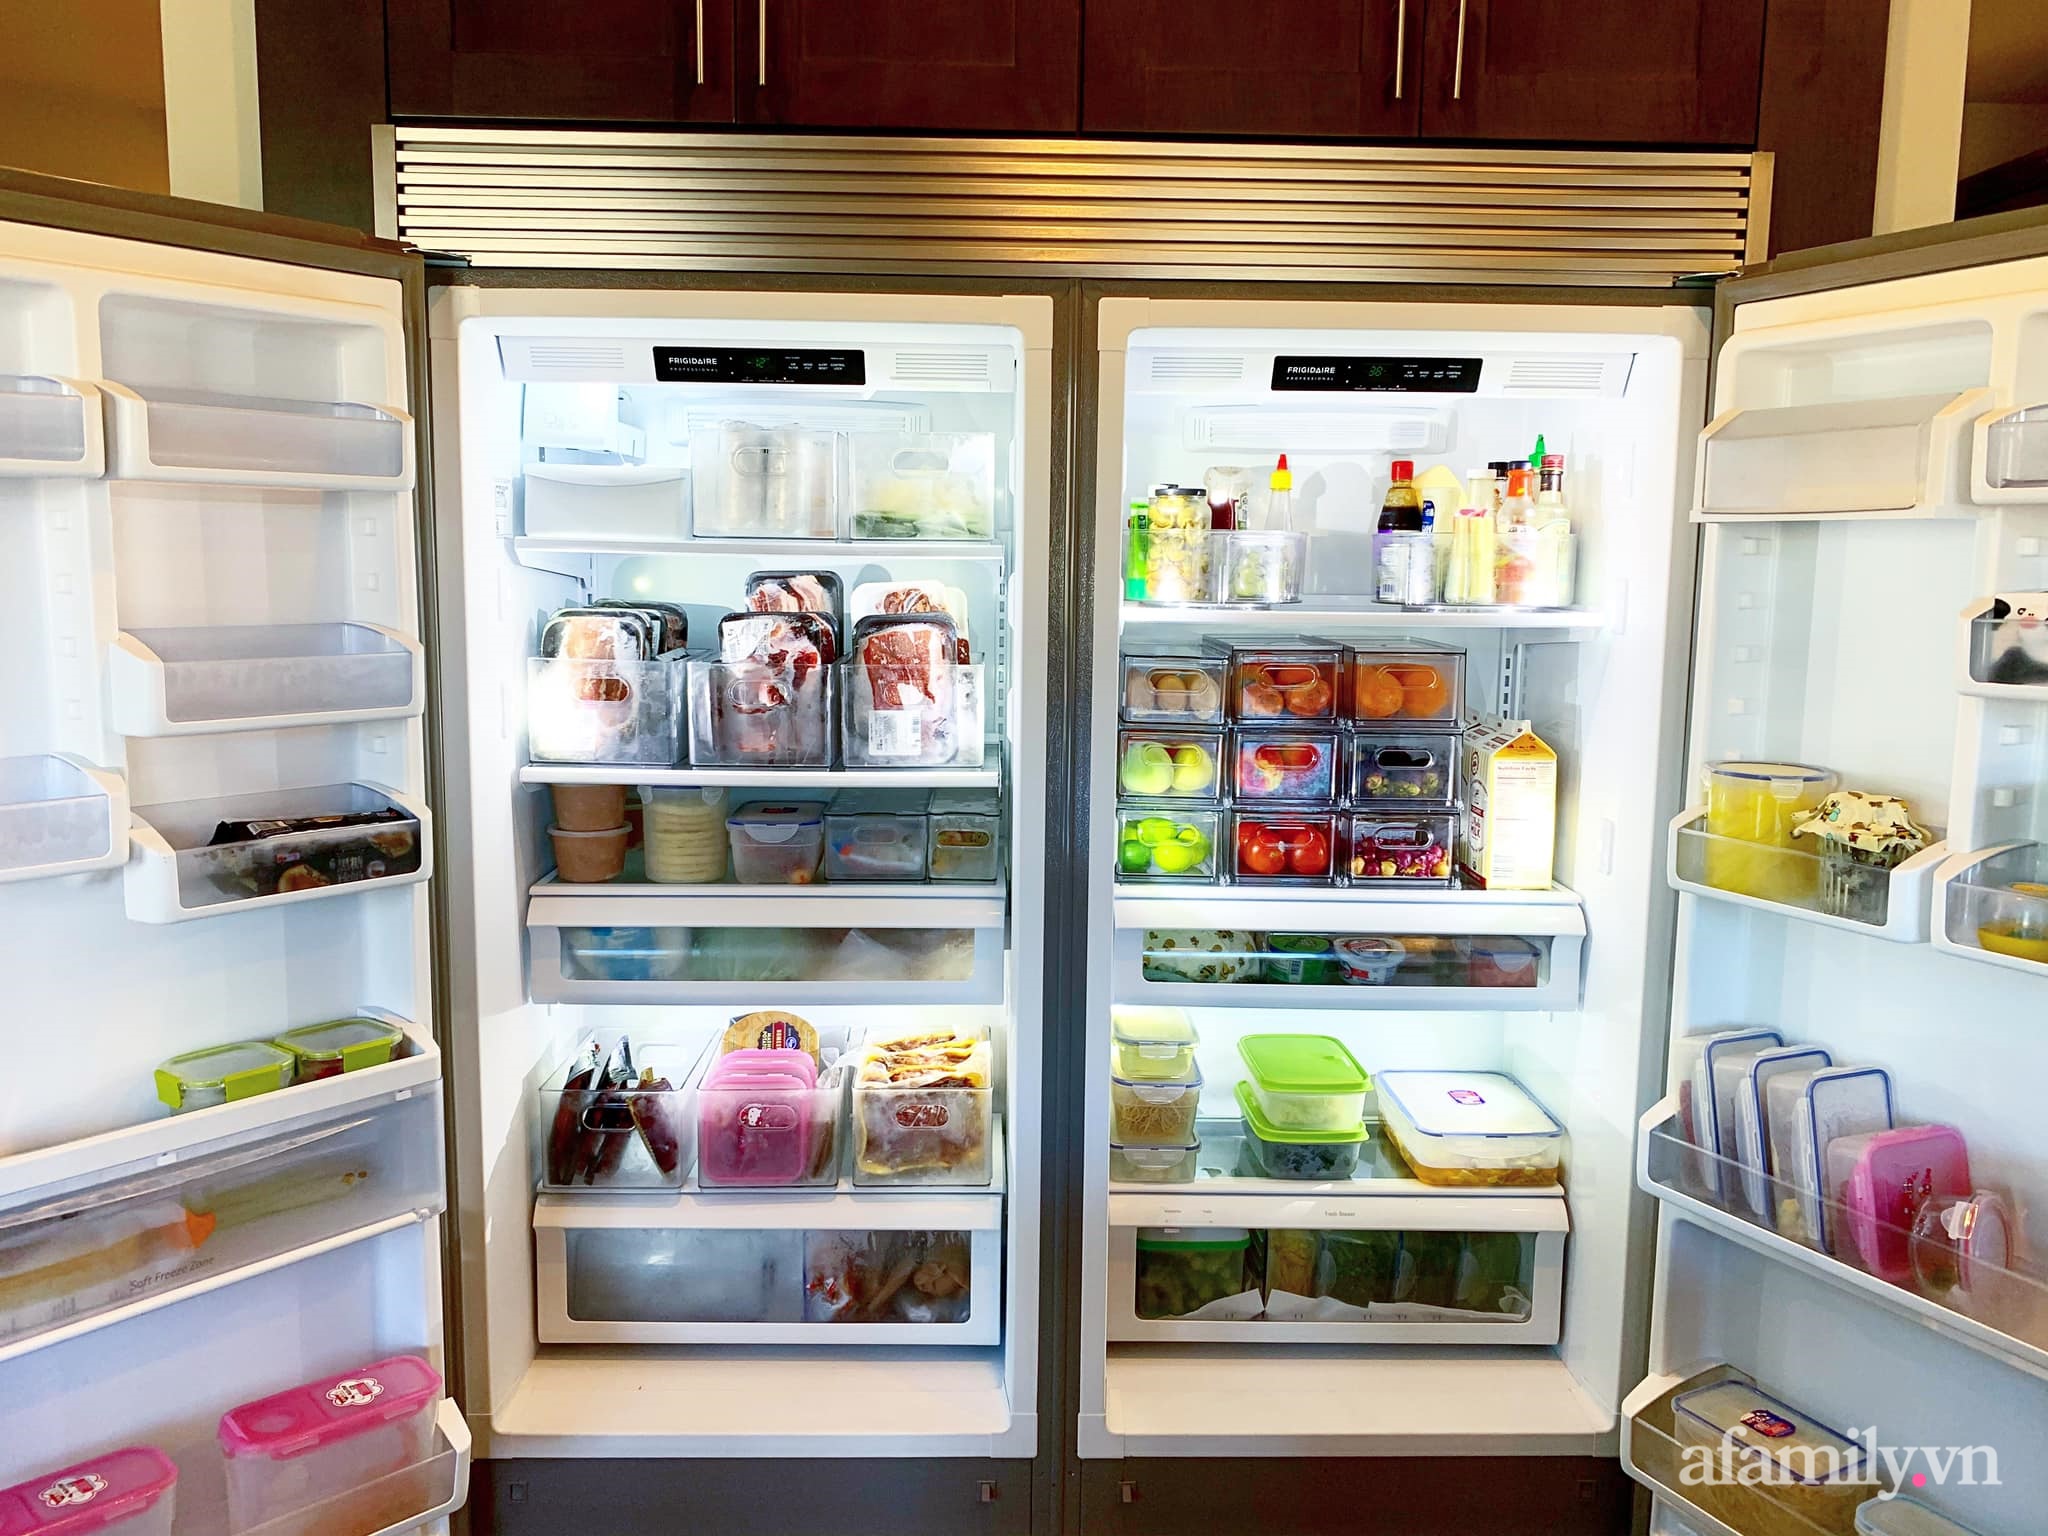 Tips sắp xếp thực phẩm đúng cách trong tủ lạnh ngày Tết từ chia sẻ của mẹ Việt tại Mỹ - Ảnh 3.